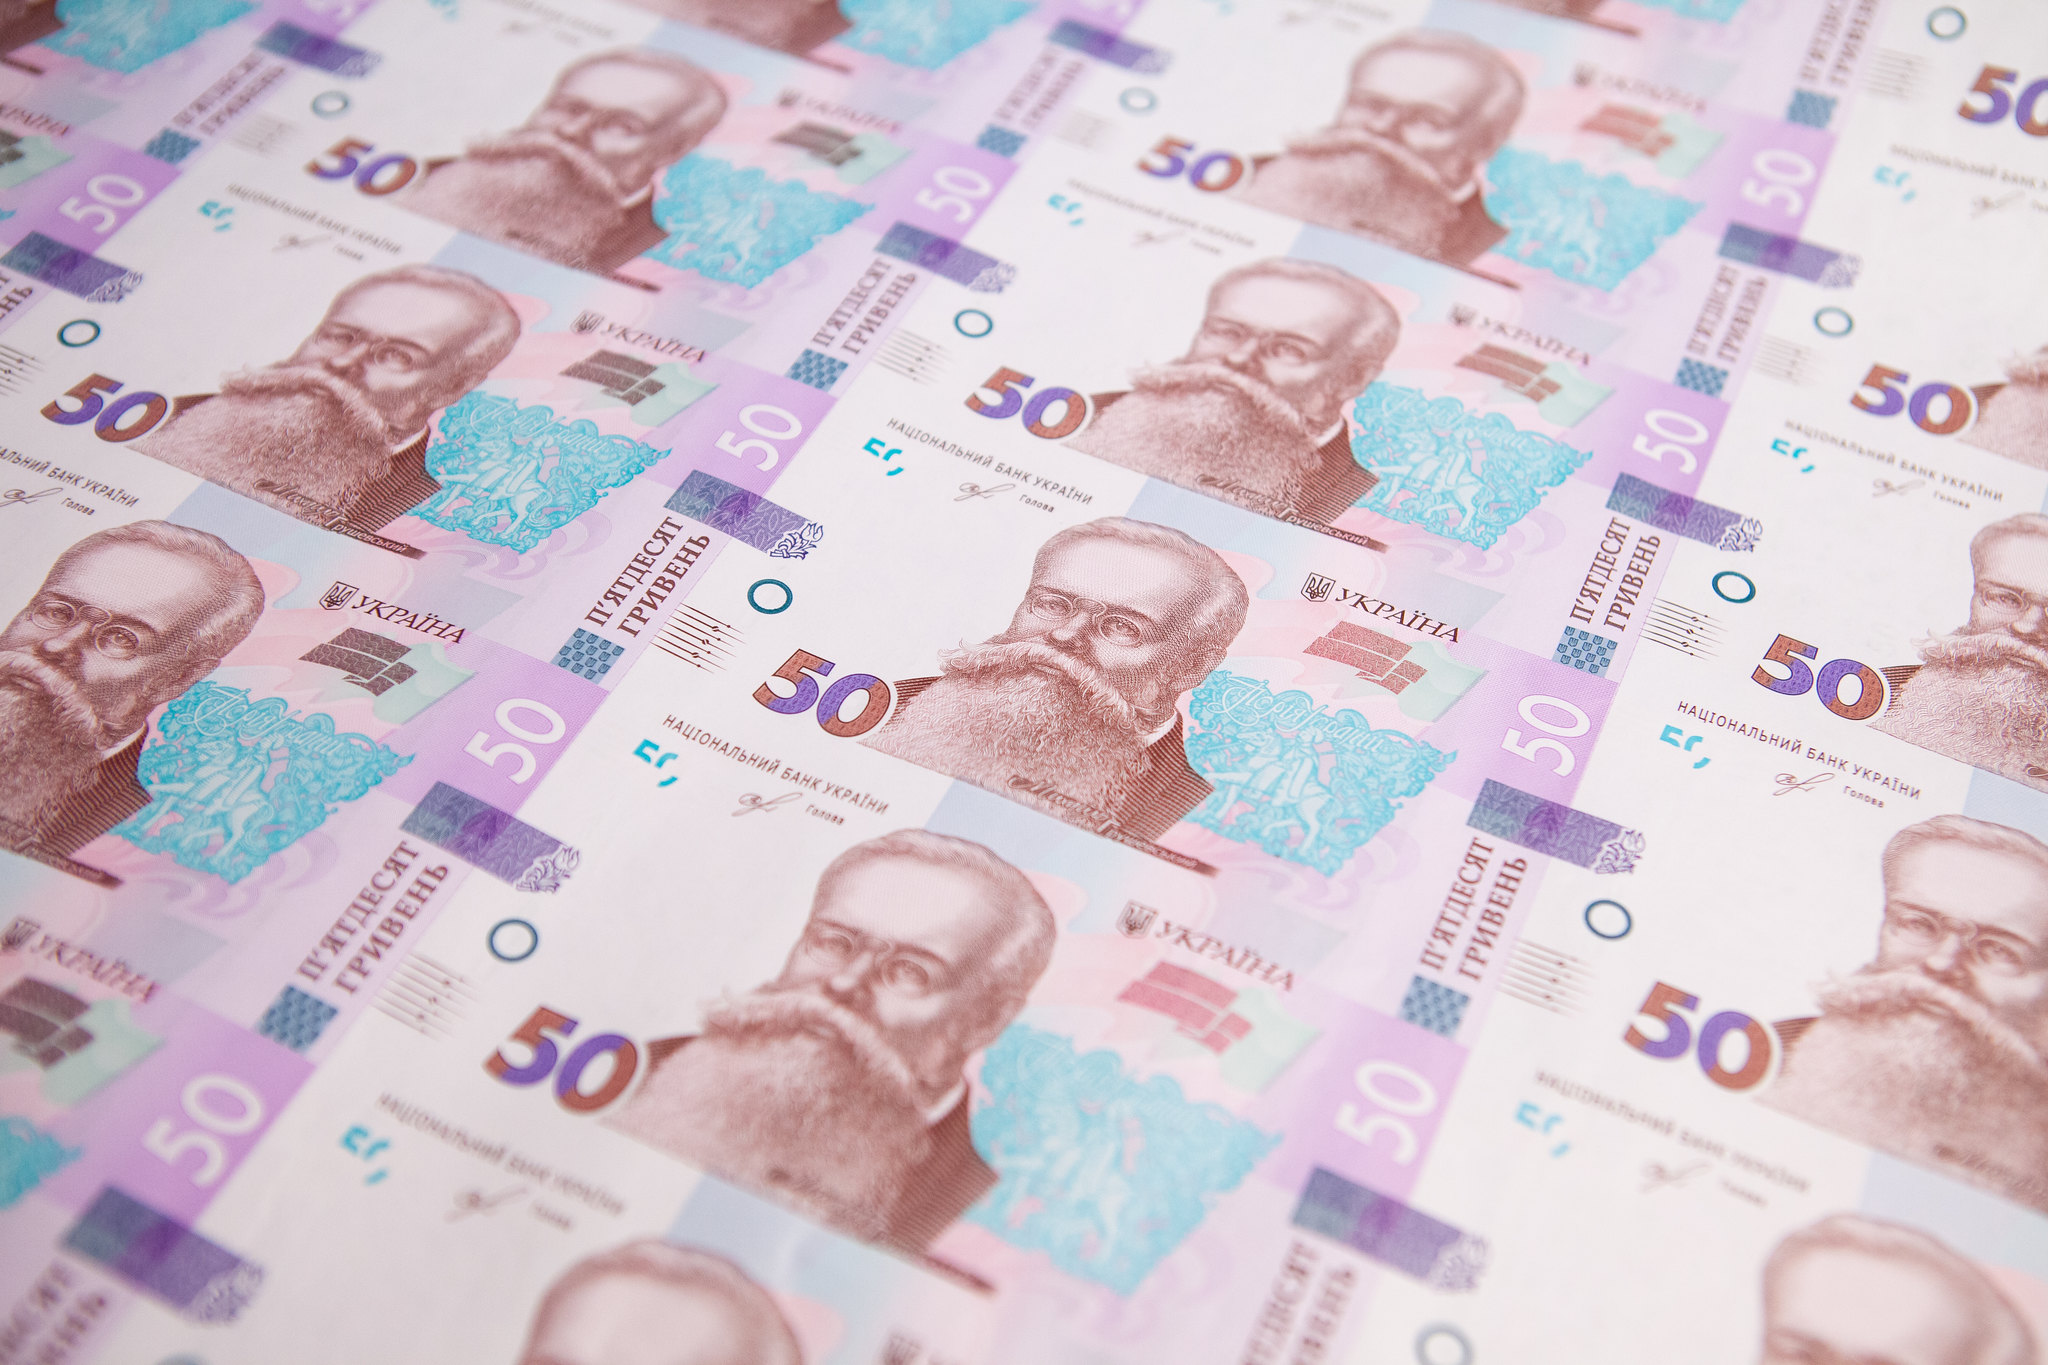 50 гривен можно обменять на 10 000: как понять, что в вашем кошельке ценный экземпляр?